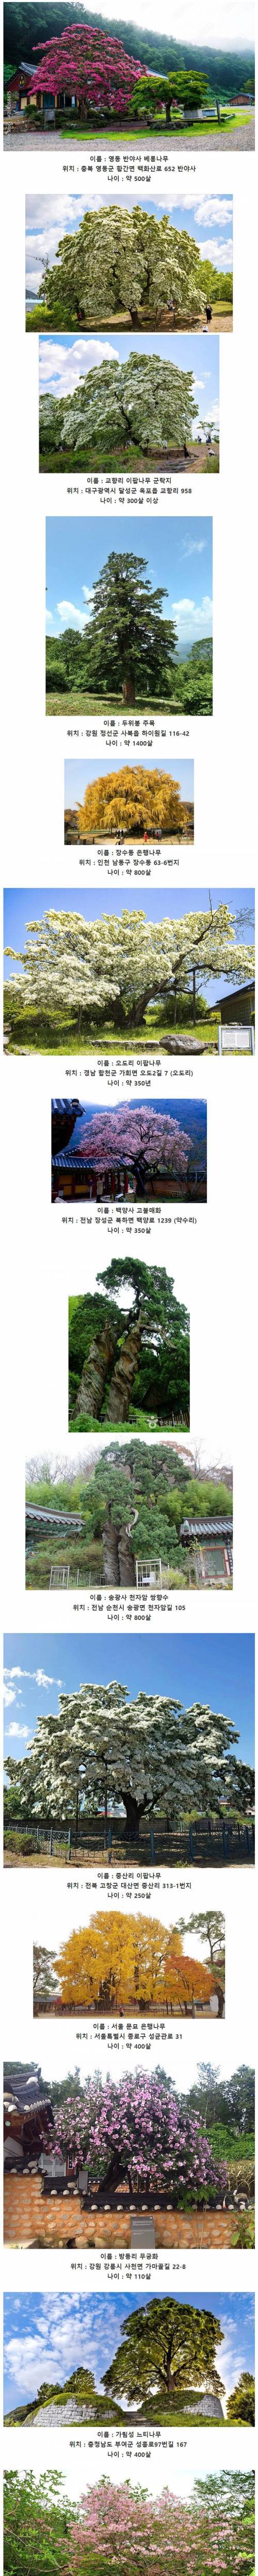 한국에 존재하는 오래된 고목들